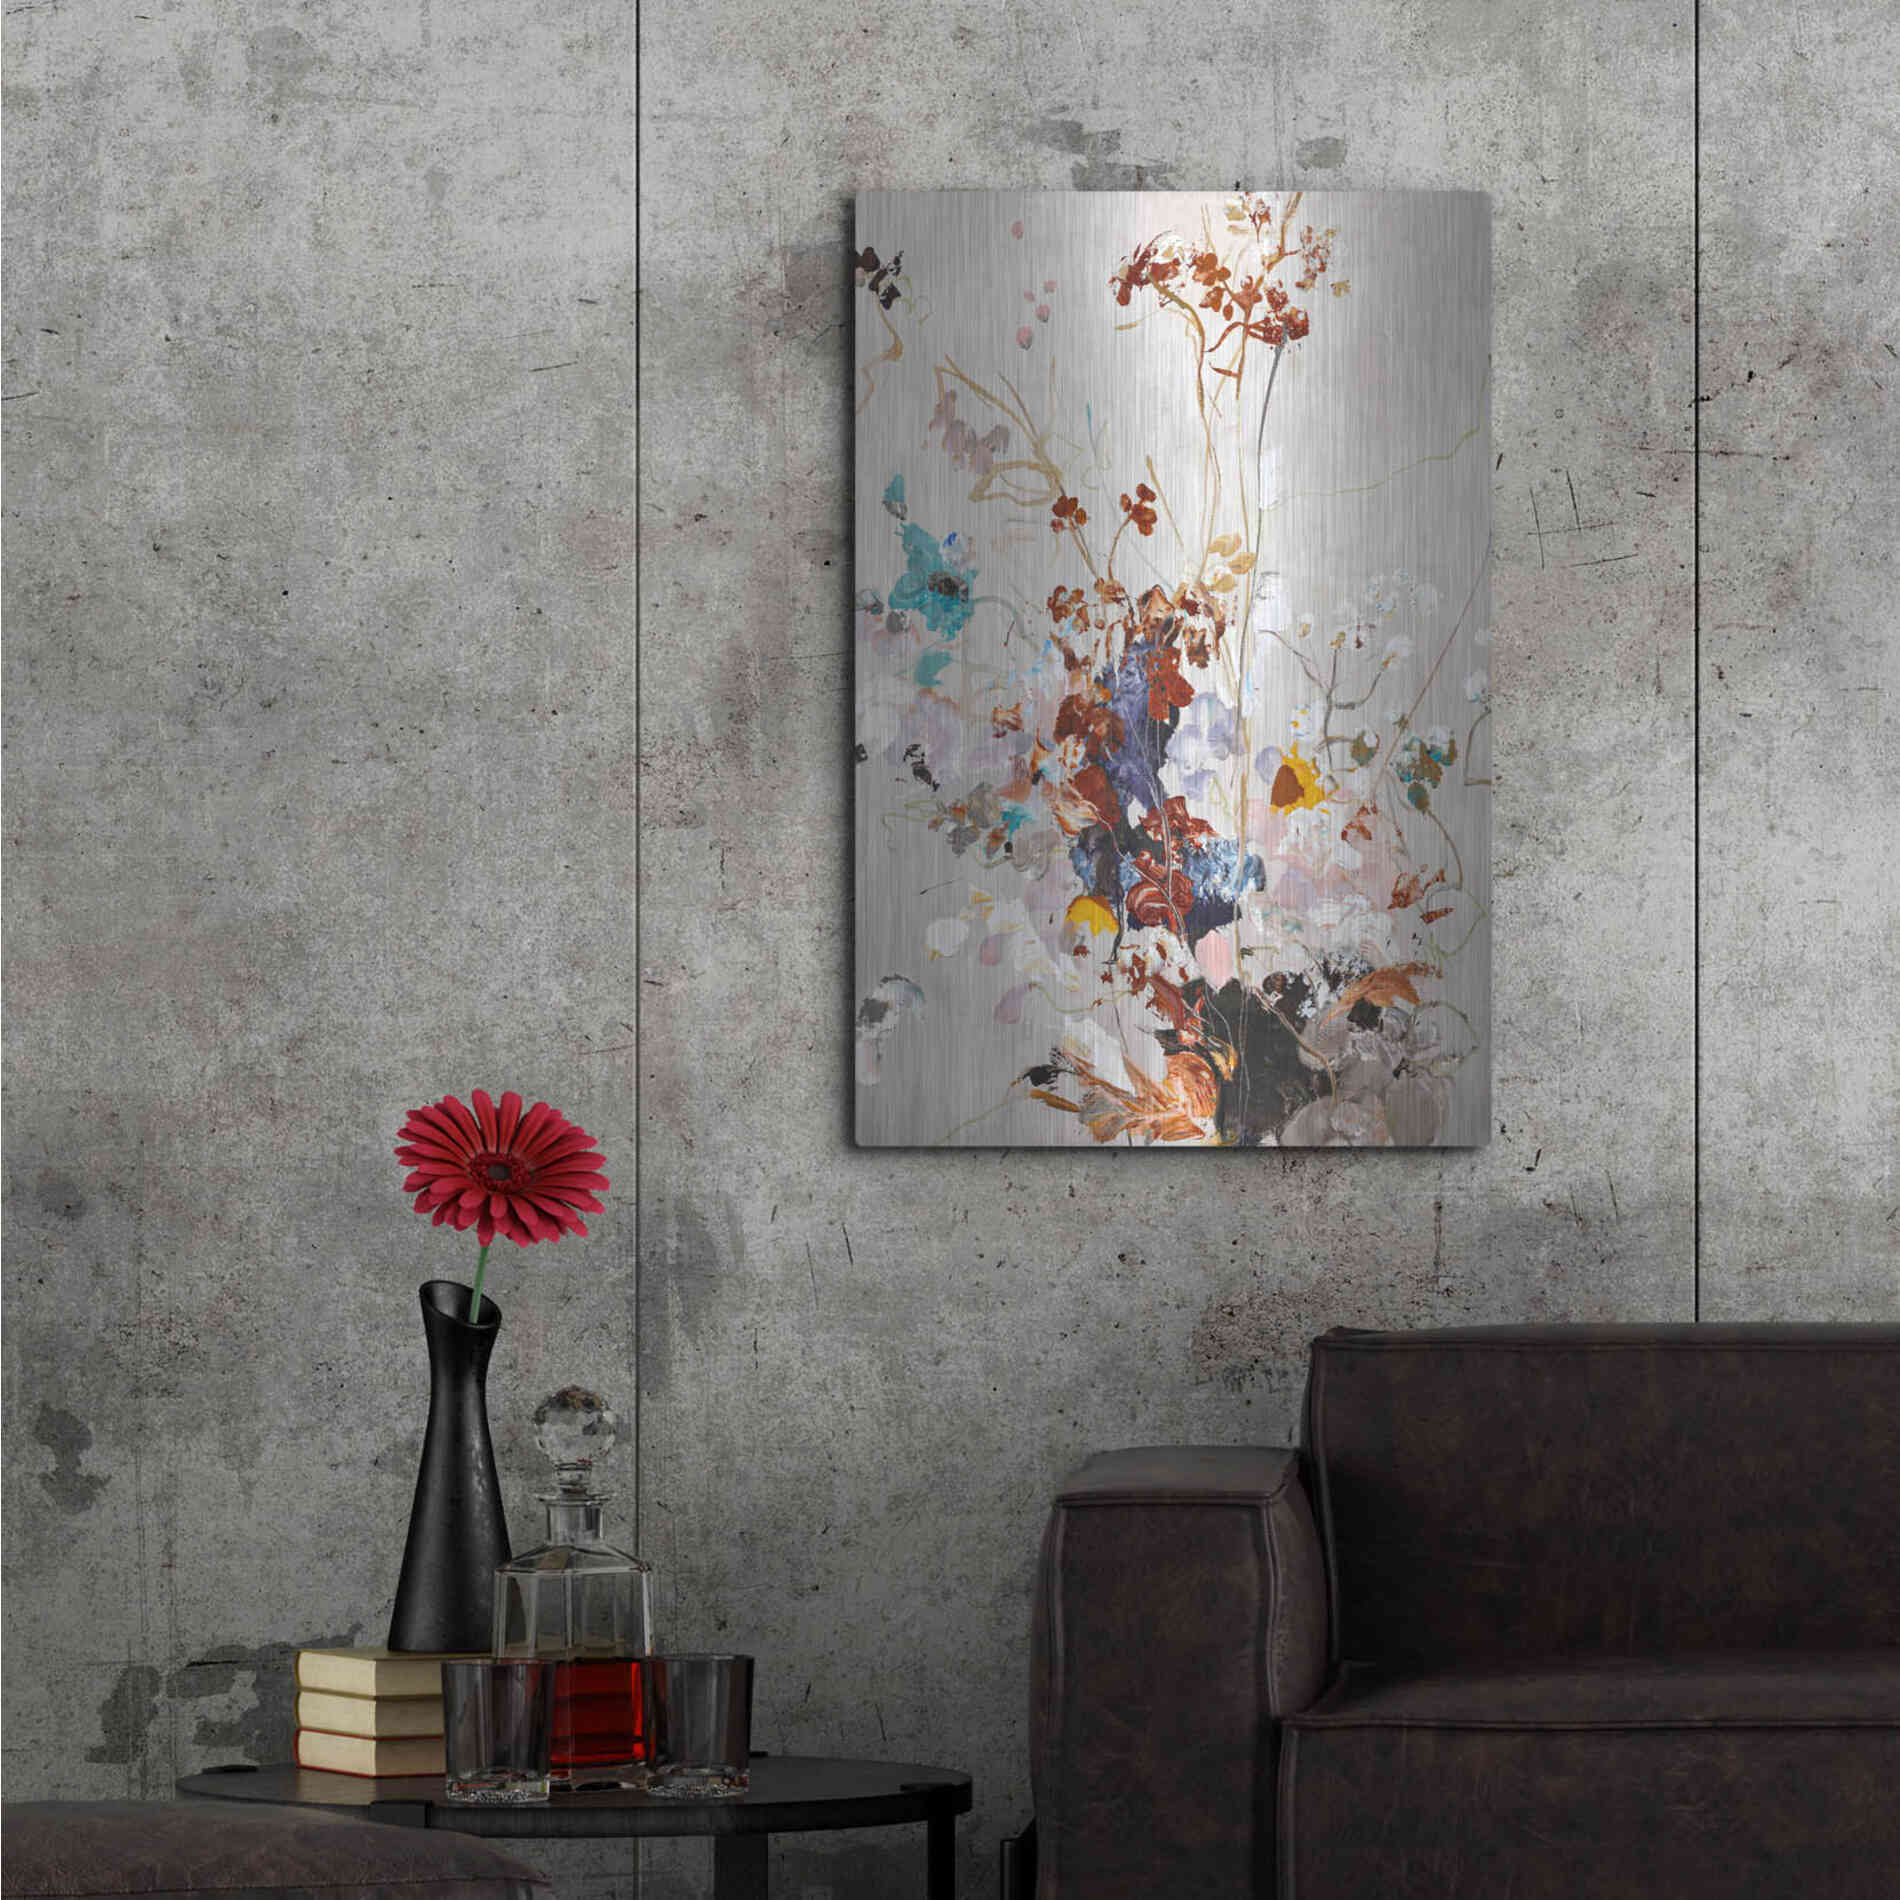 Luxe Metal Art 'Fall Floral' by Design Fabrikken, Metal Wall Art,24x36